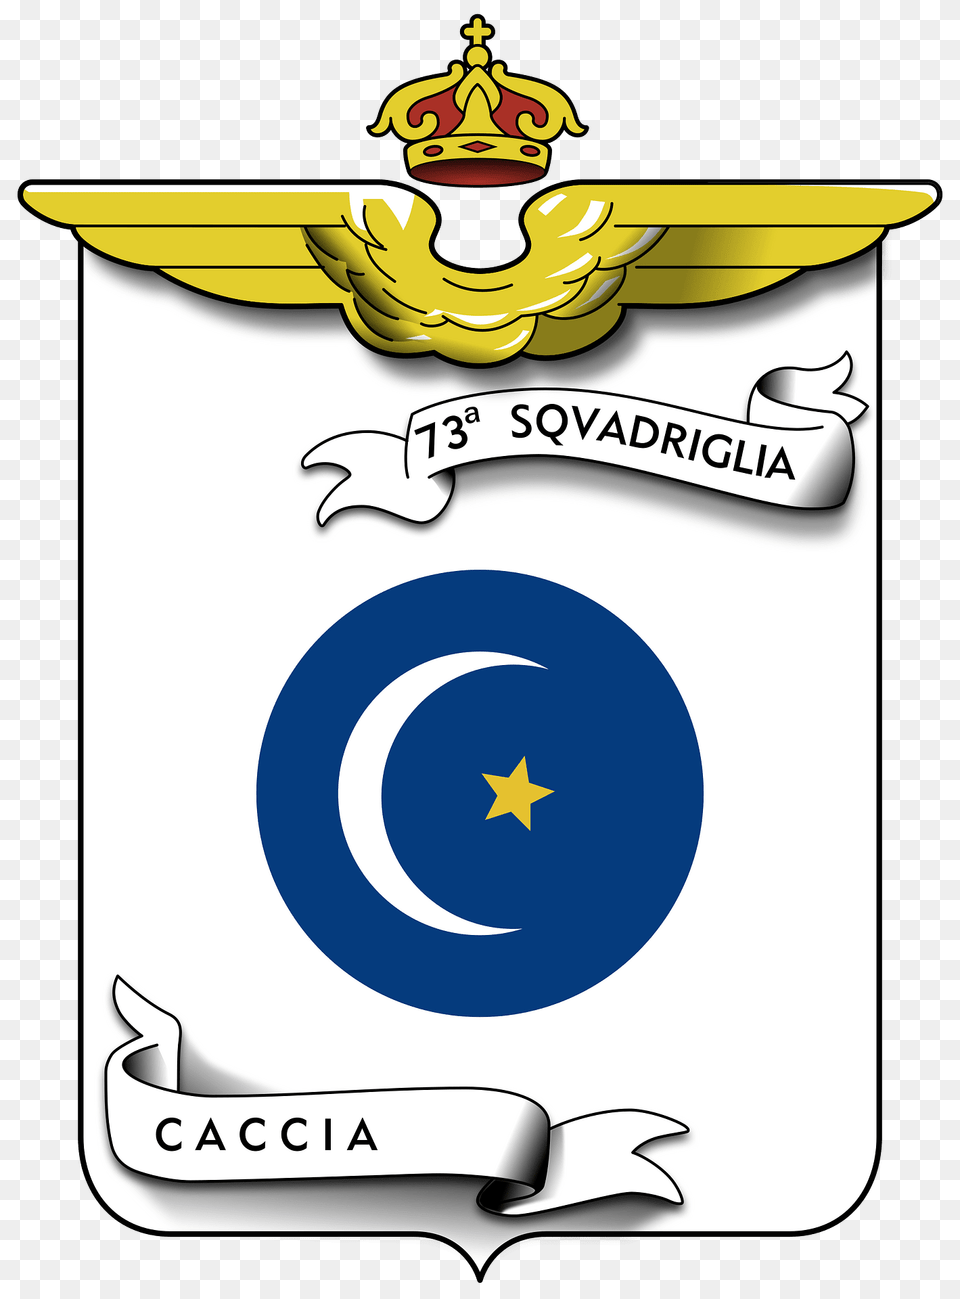 Coa 73 Squadriglia Caccia Clipart, Logo, Emblem, Symbol, Text Png Image